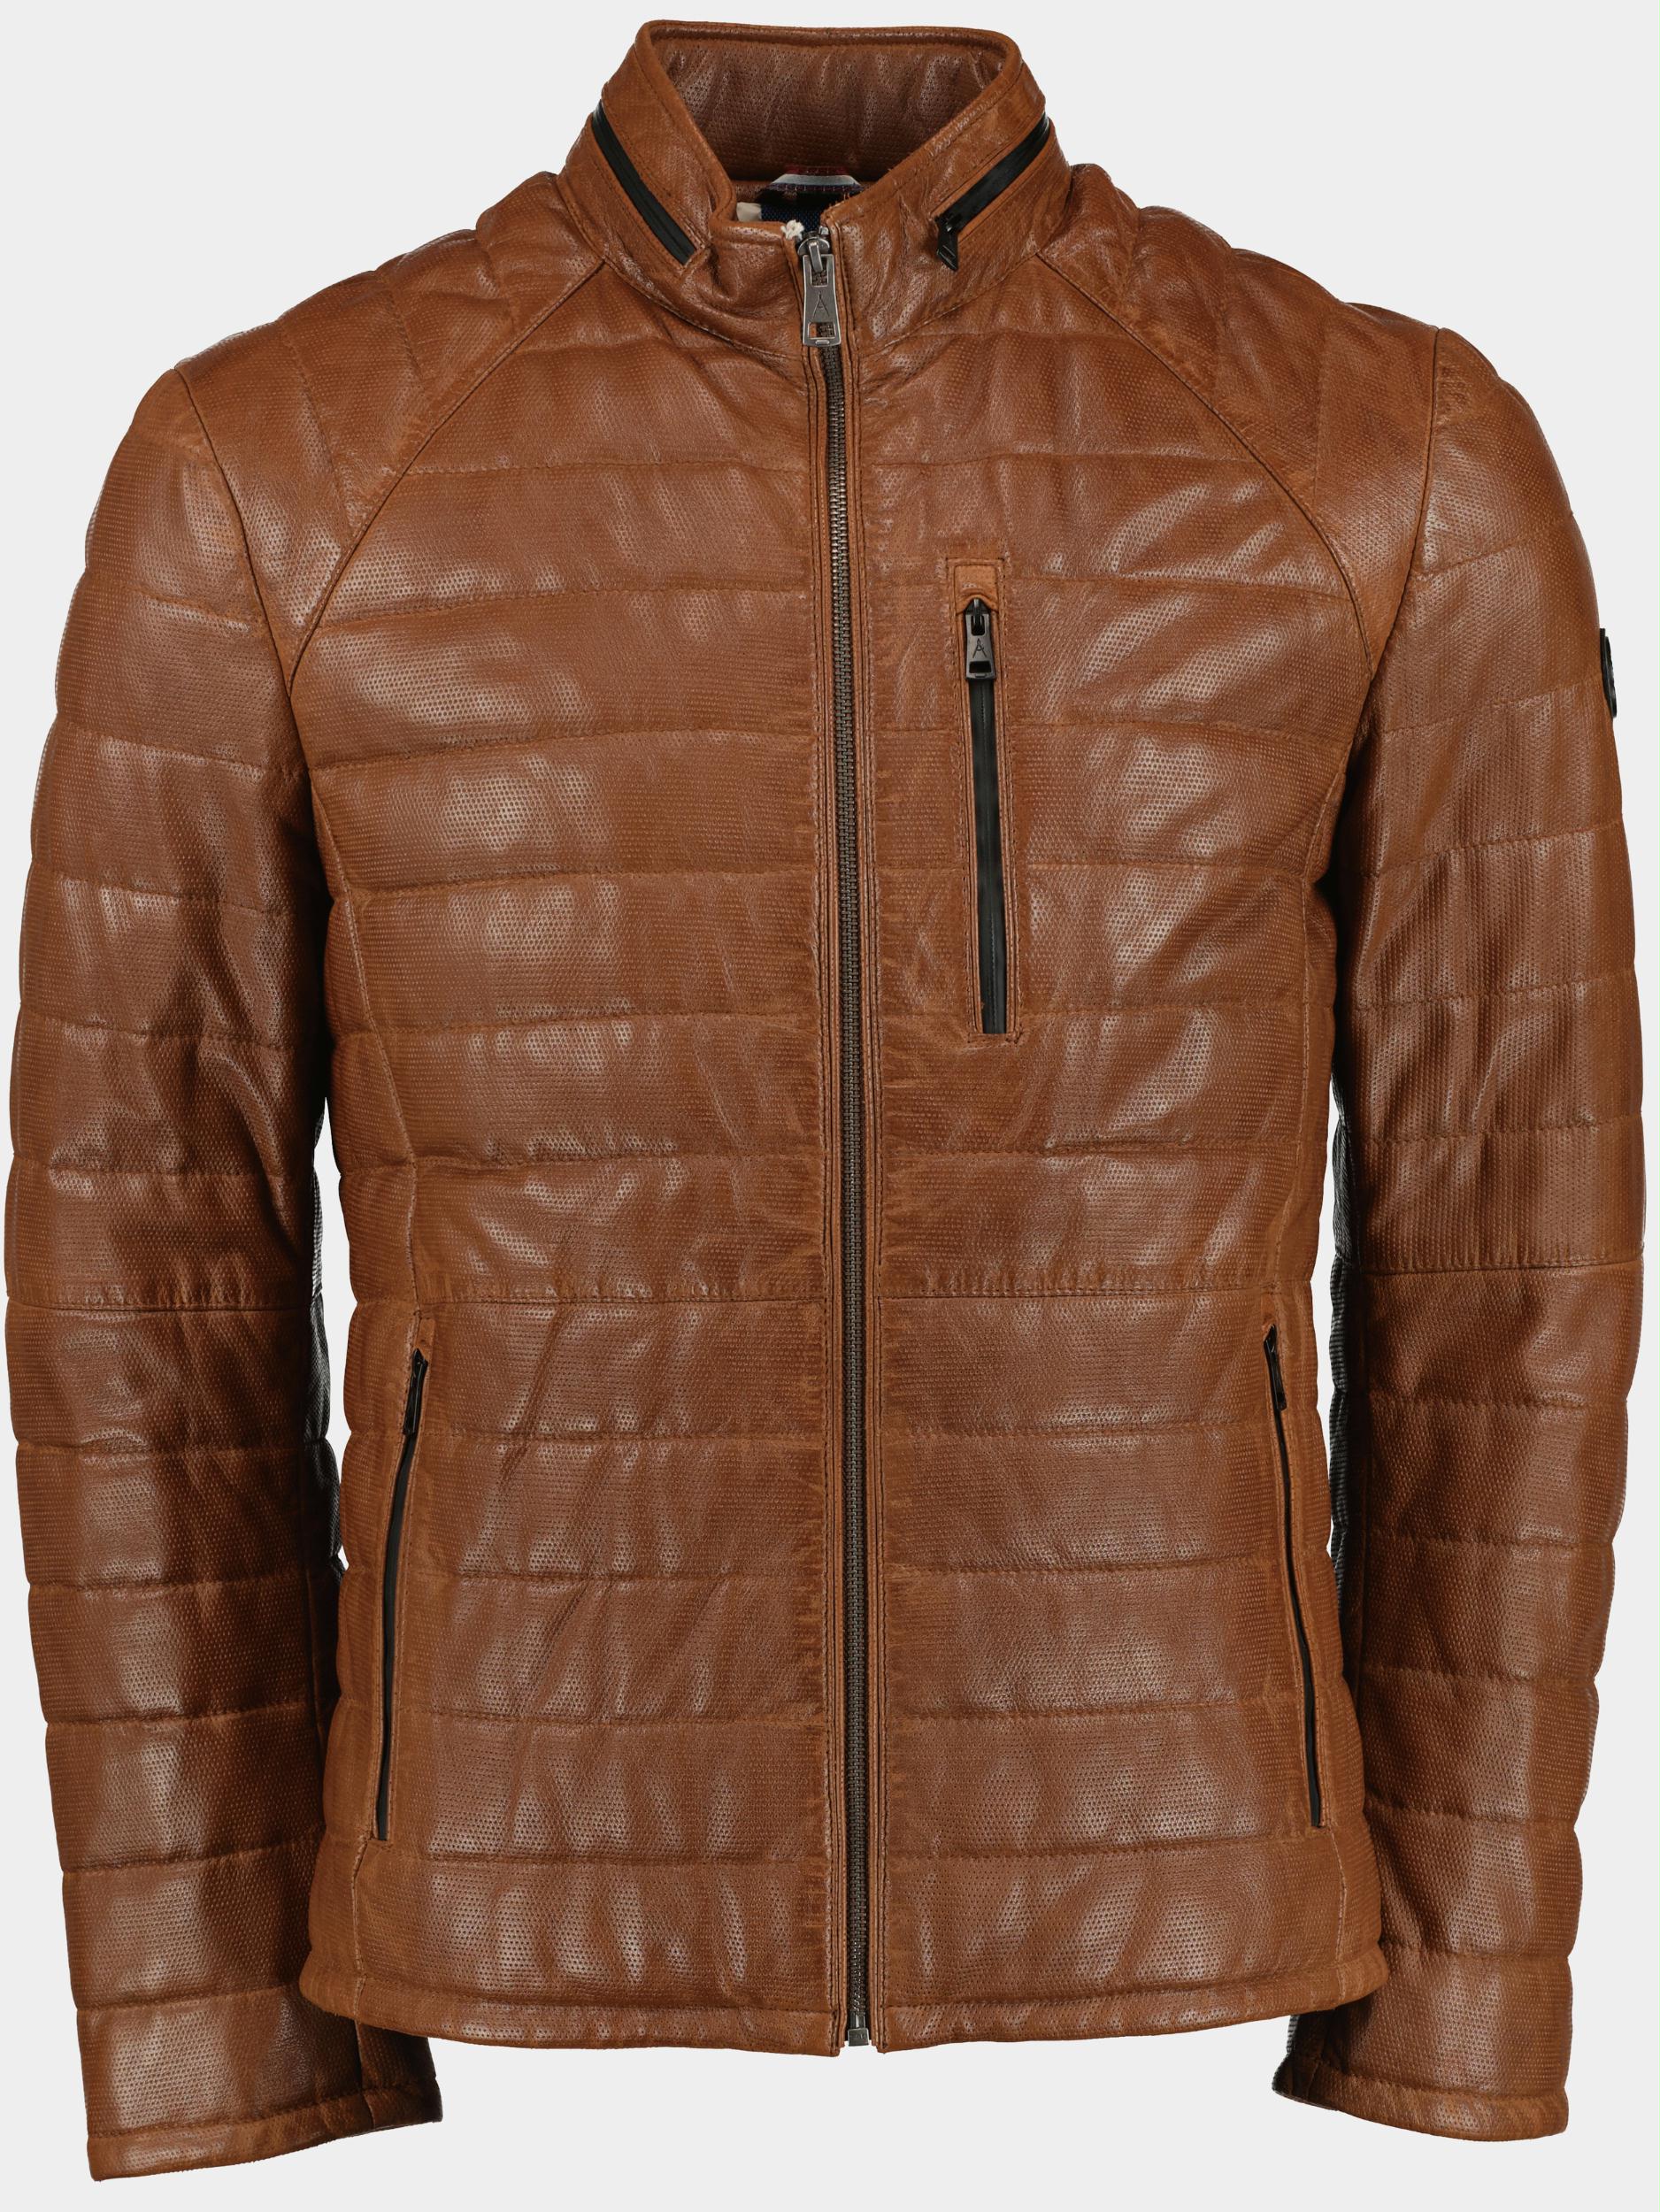 DNR Lederen jack Bruin Leather Jacket 52290/422